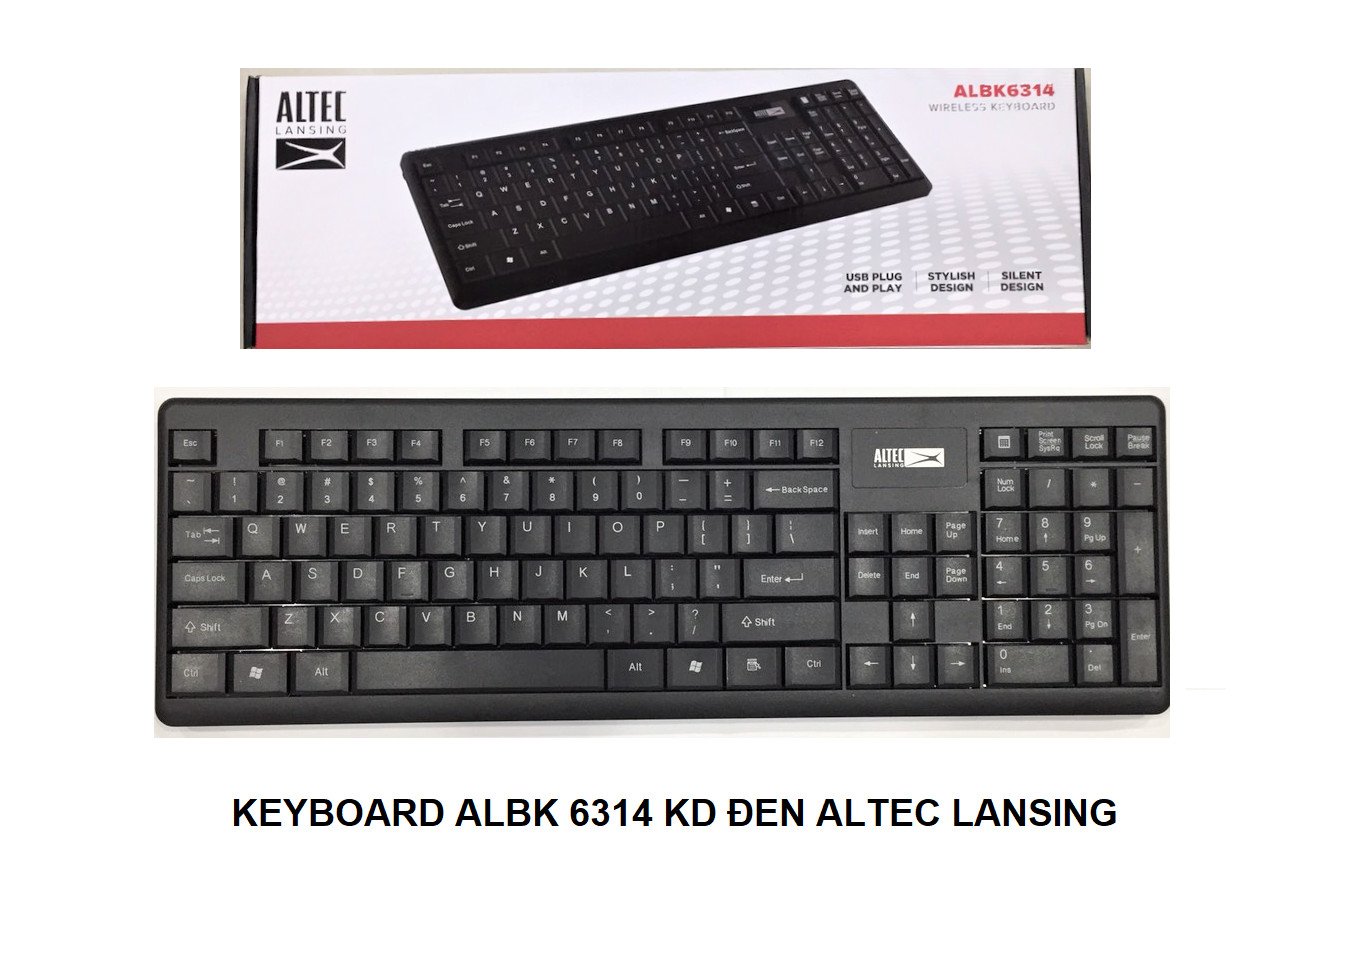 Keyboard ko dây ALTEC LANSING ALBK 6314 Black